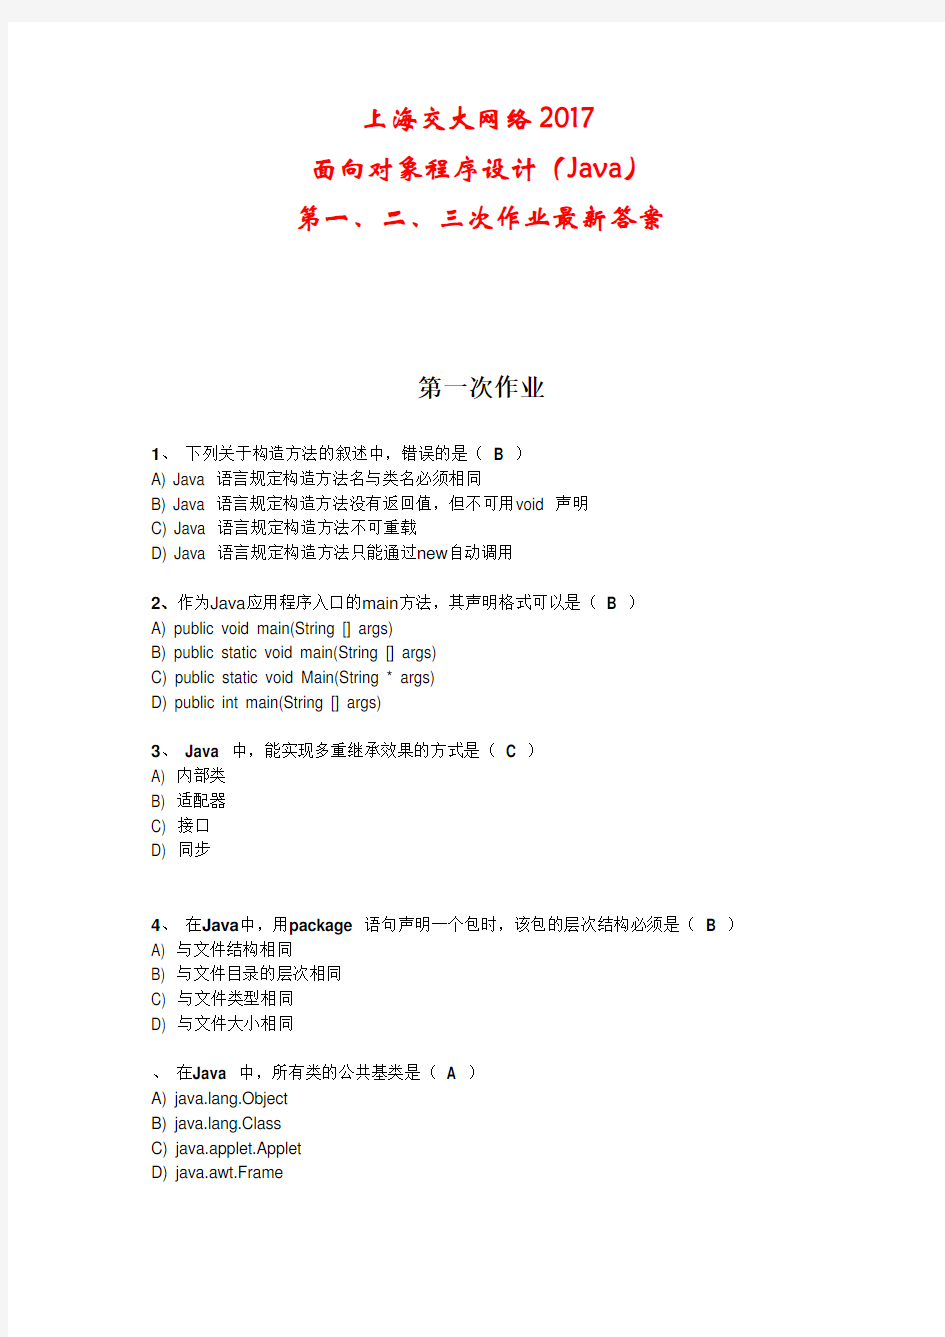 上海交大网络面向对象程序设计Java第一、二、三次作业答案